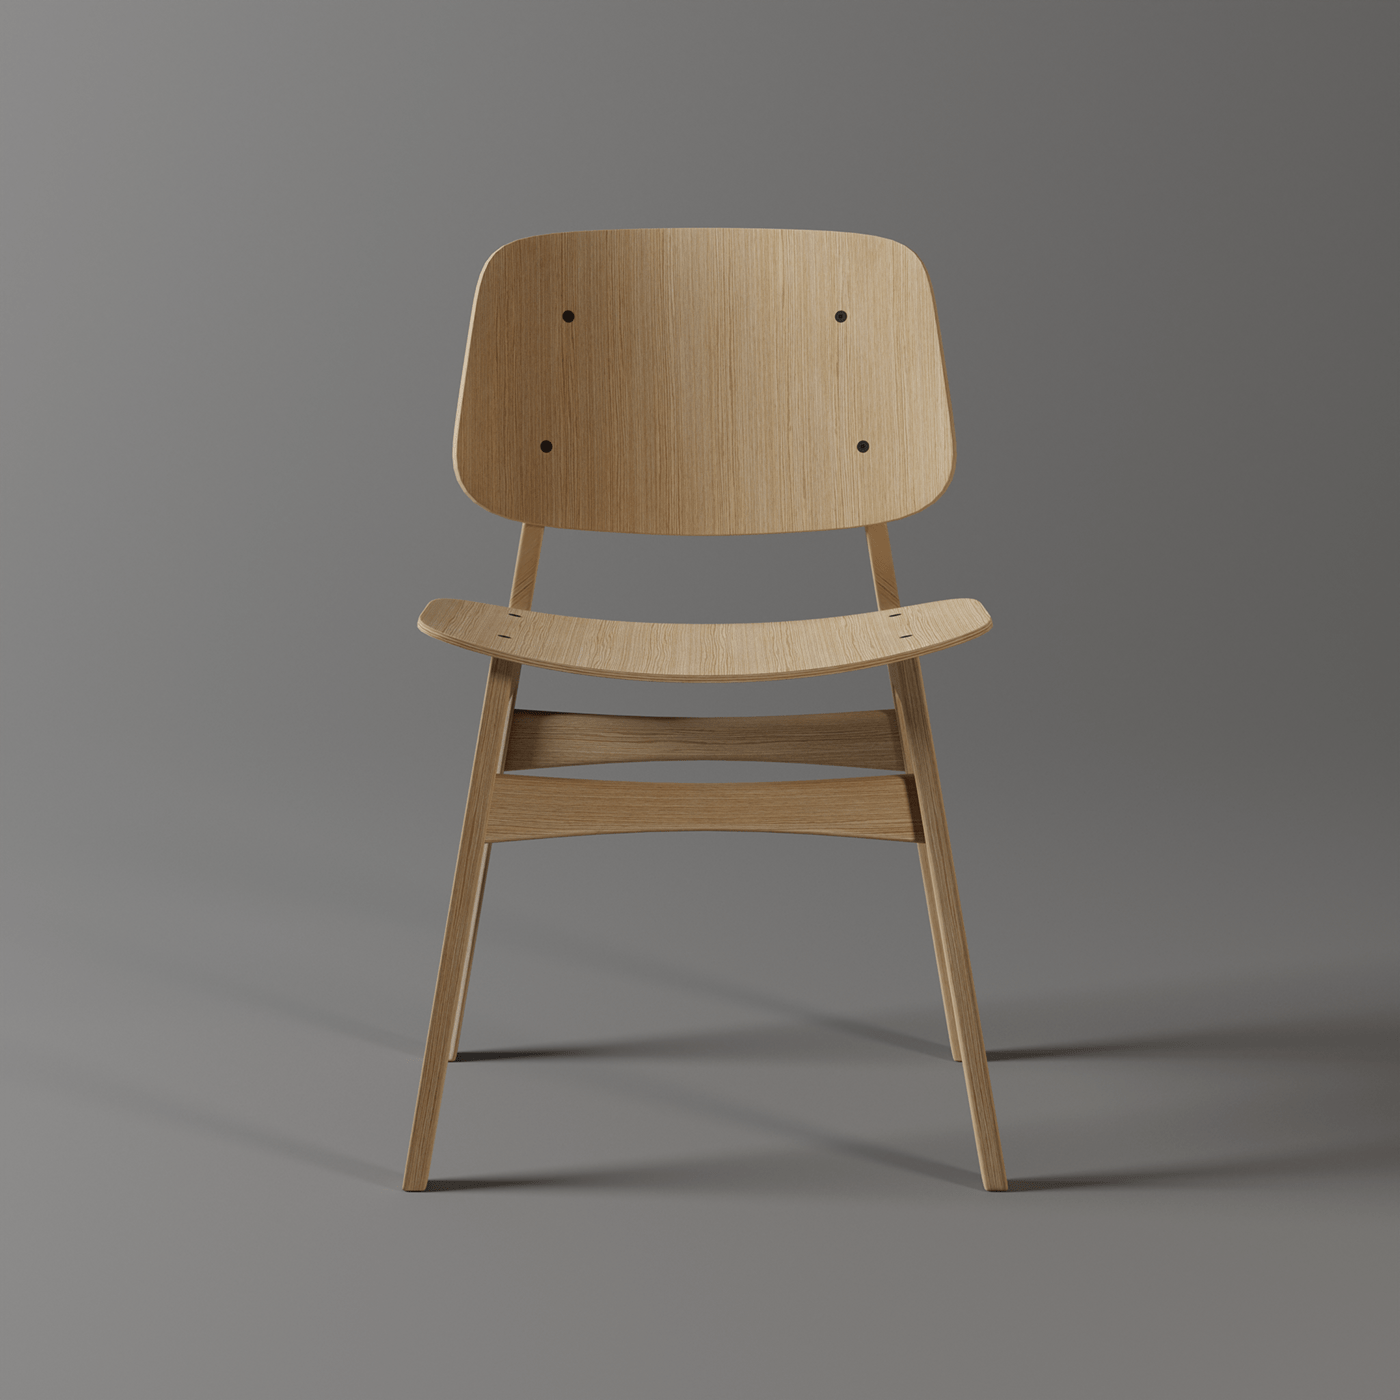 3D 3d modeling blender blender3d chair design furniture product product design  wood